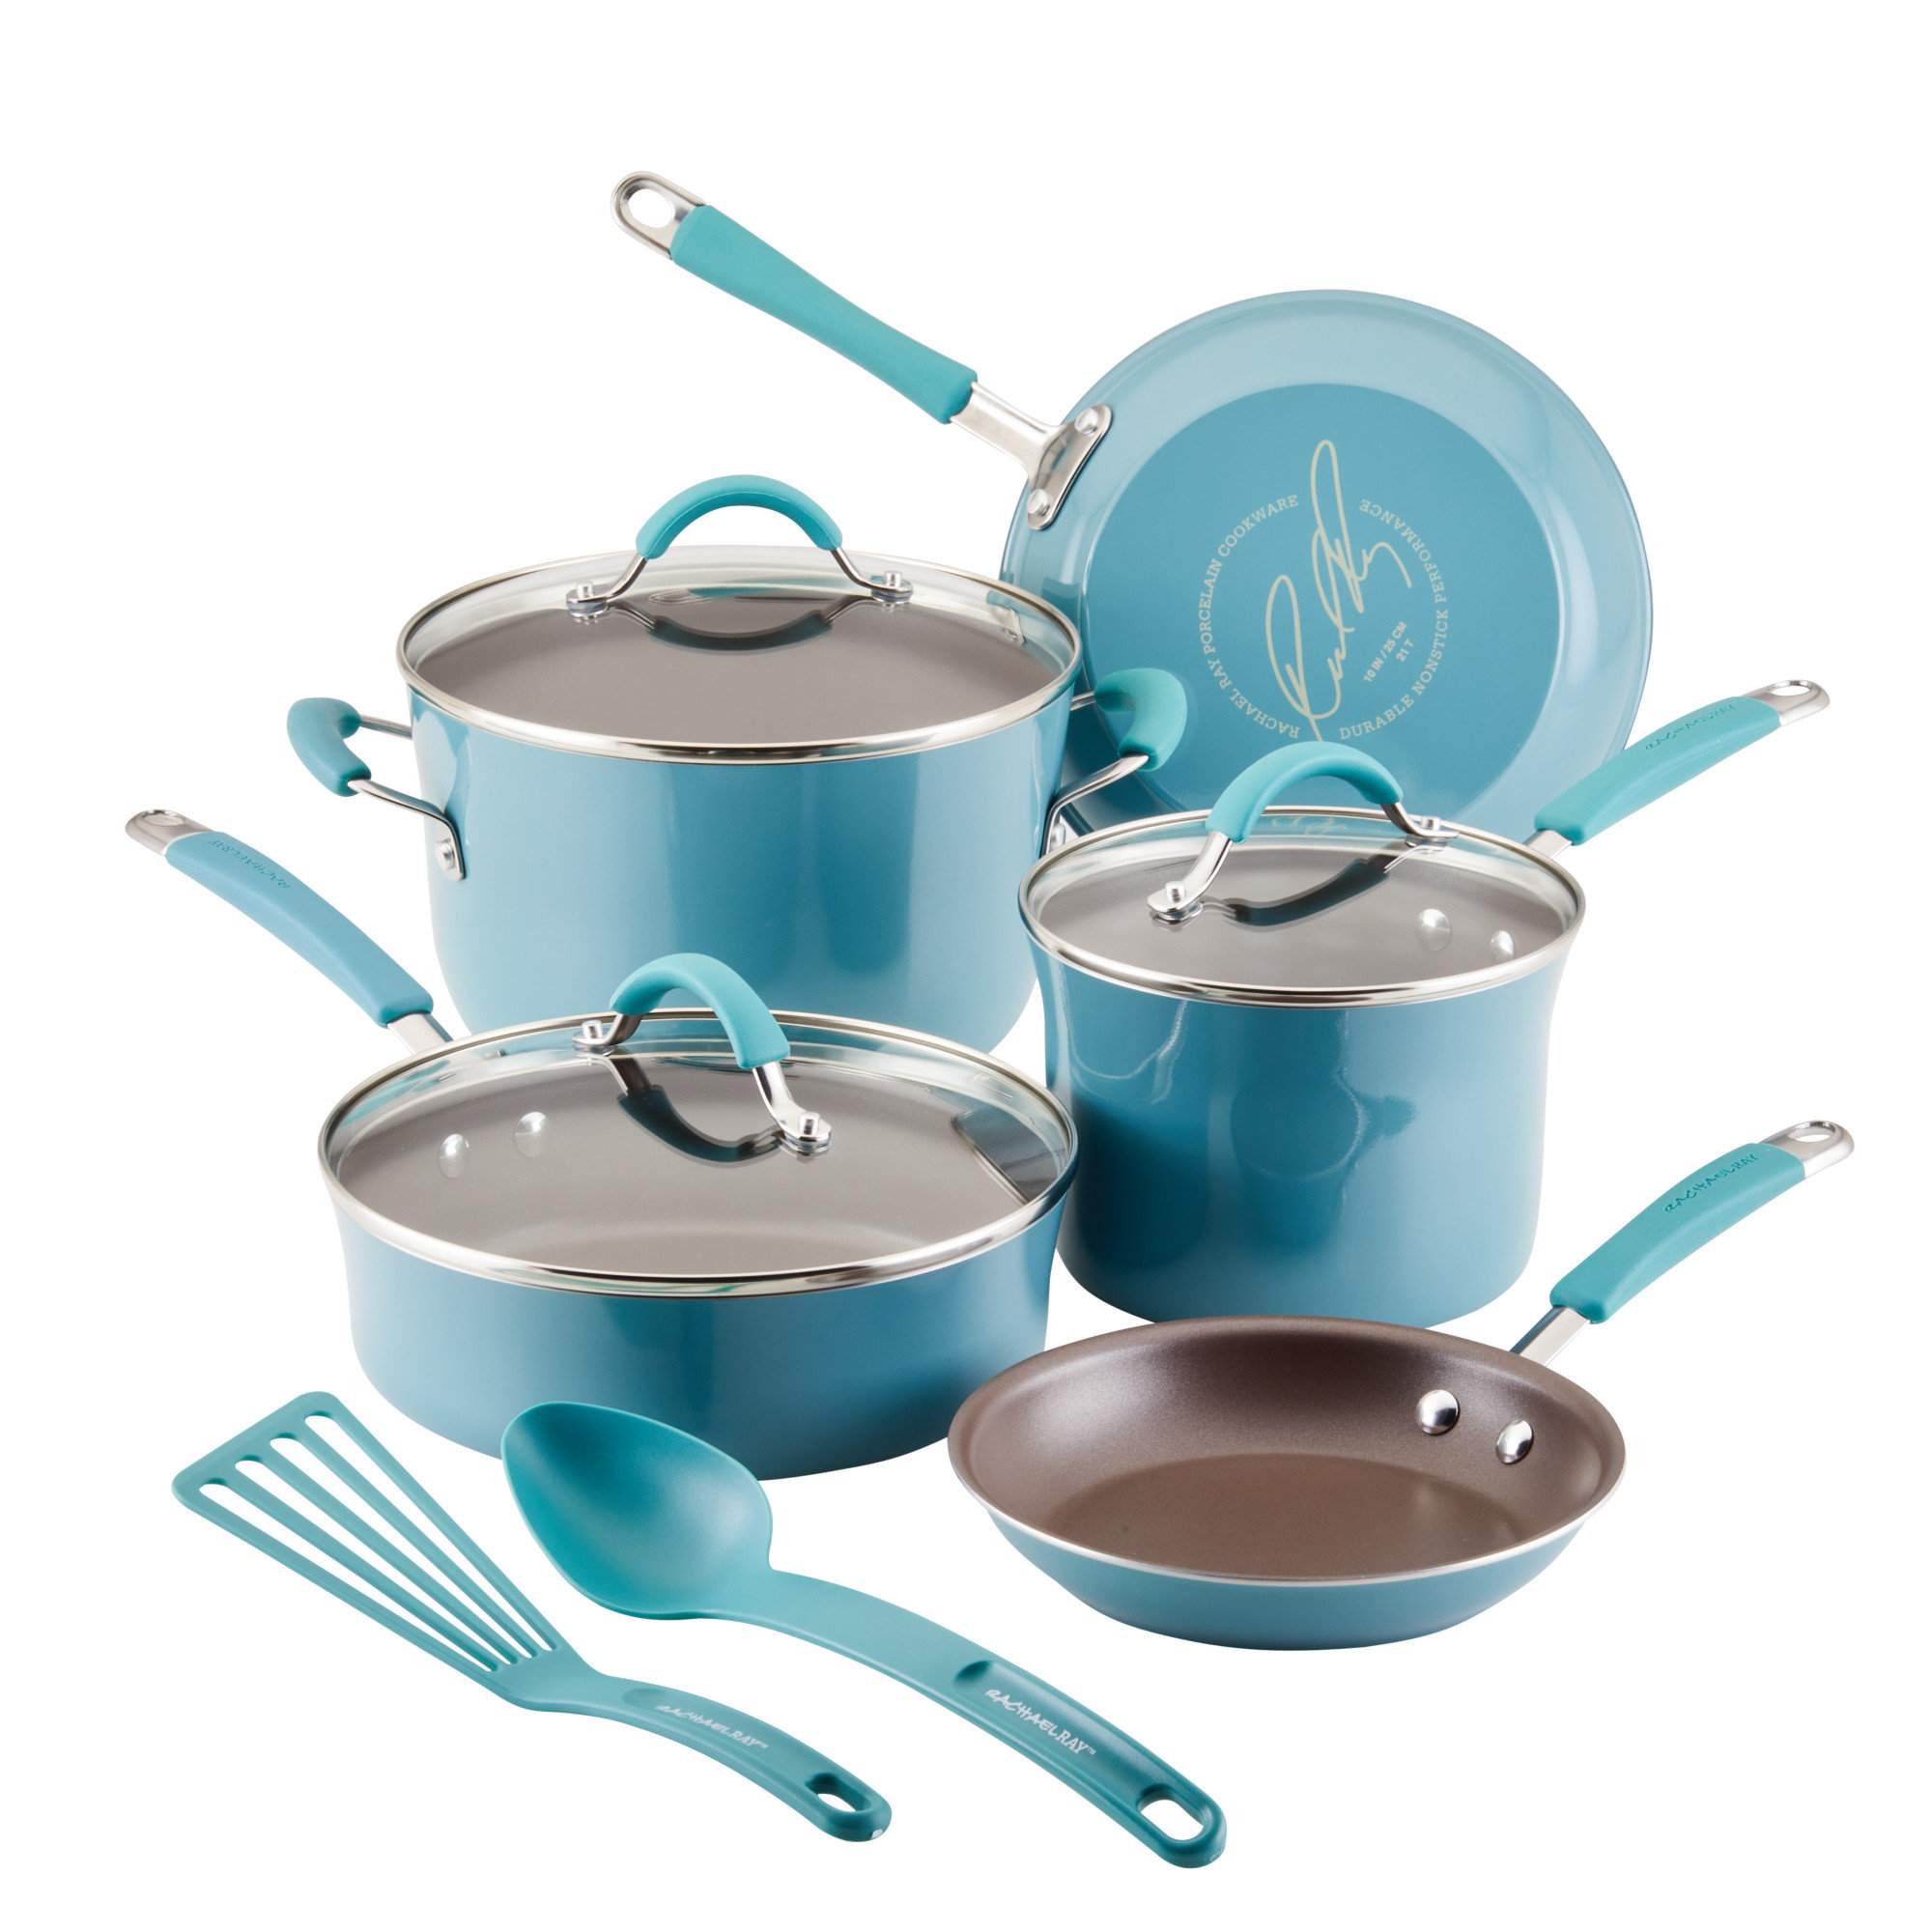 https://assets.wfcdn.com/im/89025616/compr-r85/2252/225219621/rachael-ray-cucina-nonstick-cookware-pots-and-pans-set-includes-cooking-utensils-10-piece.jpg